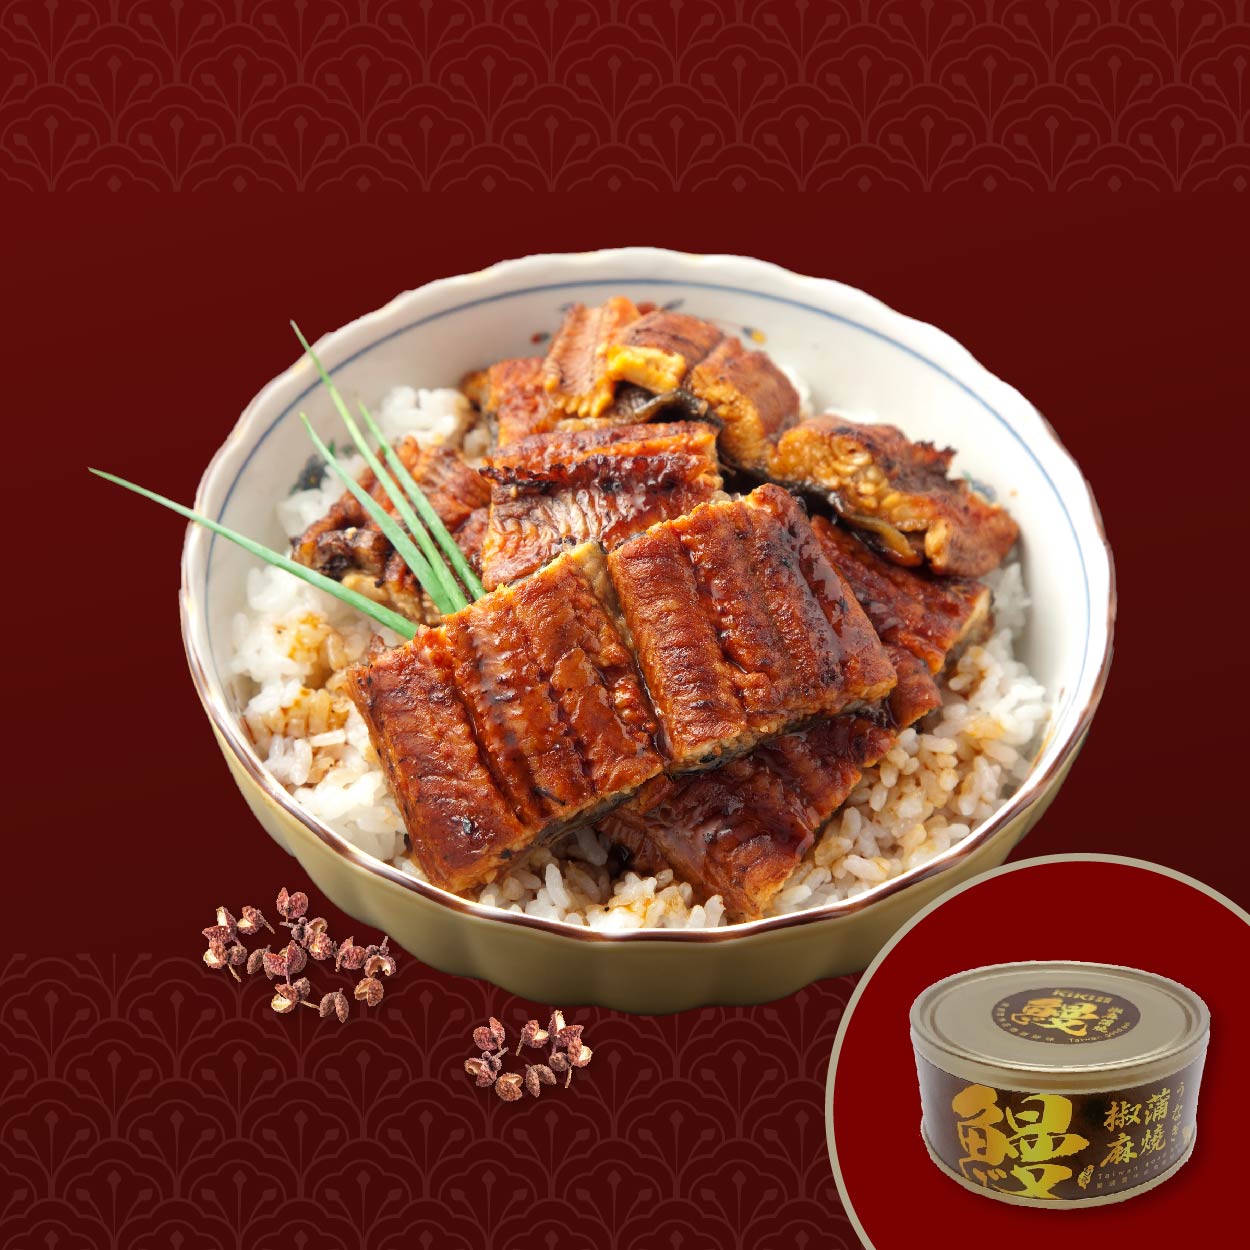 KiKi食品雜貨 椒麻蒲燒鰻魚 鹹甜香麻 鰻魚鮮嫩細緻 刺激你的味蕾